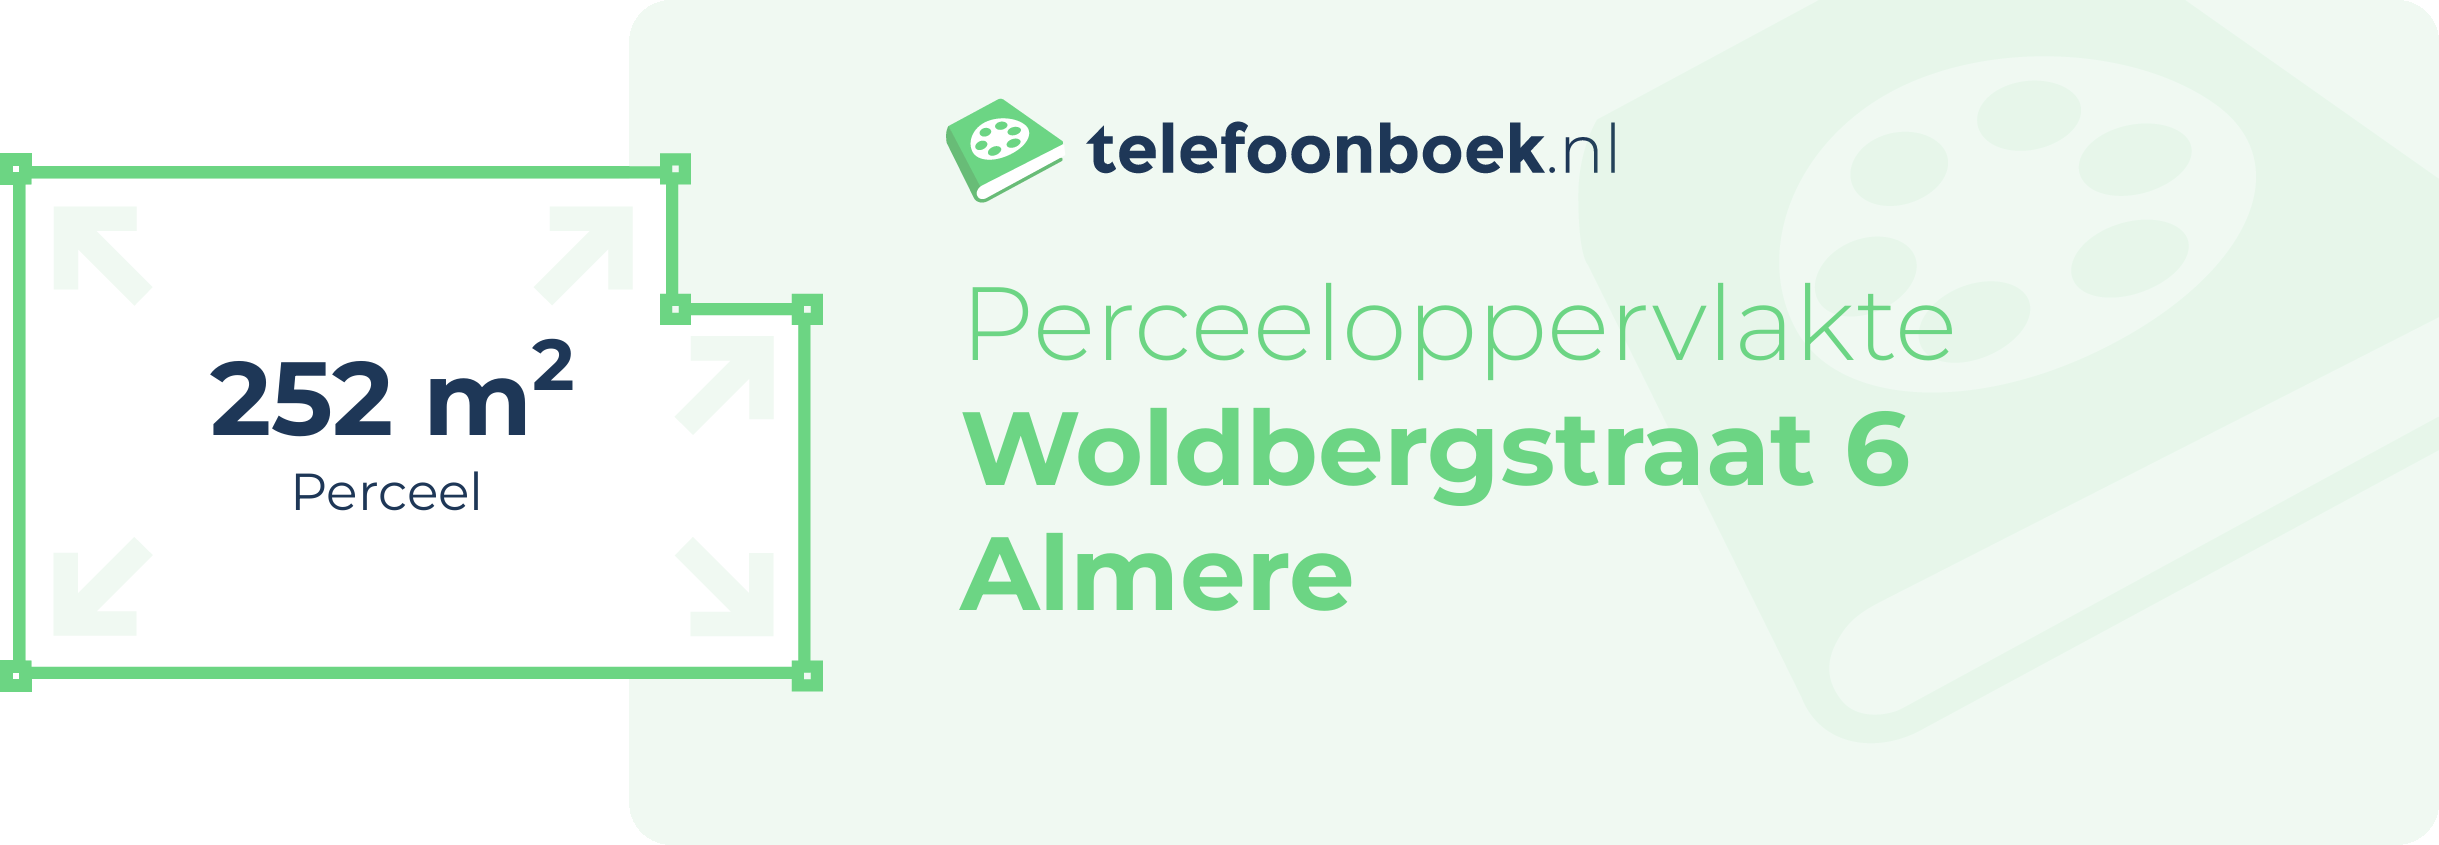 Perceeloppervlakte Woldbergstraat 6 Almere